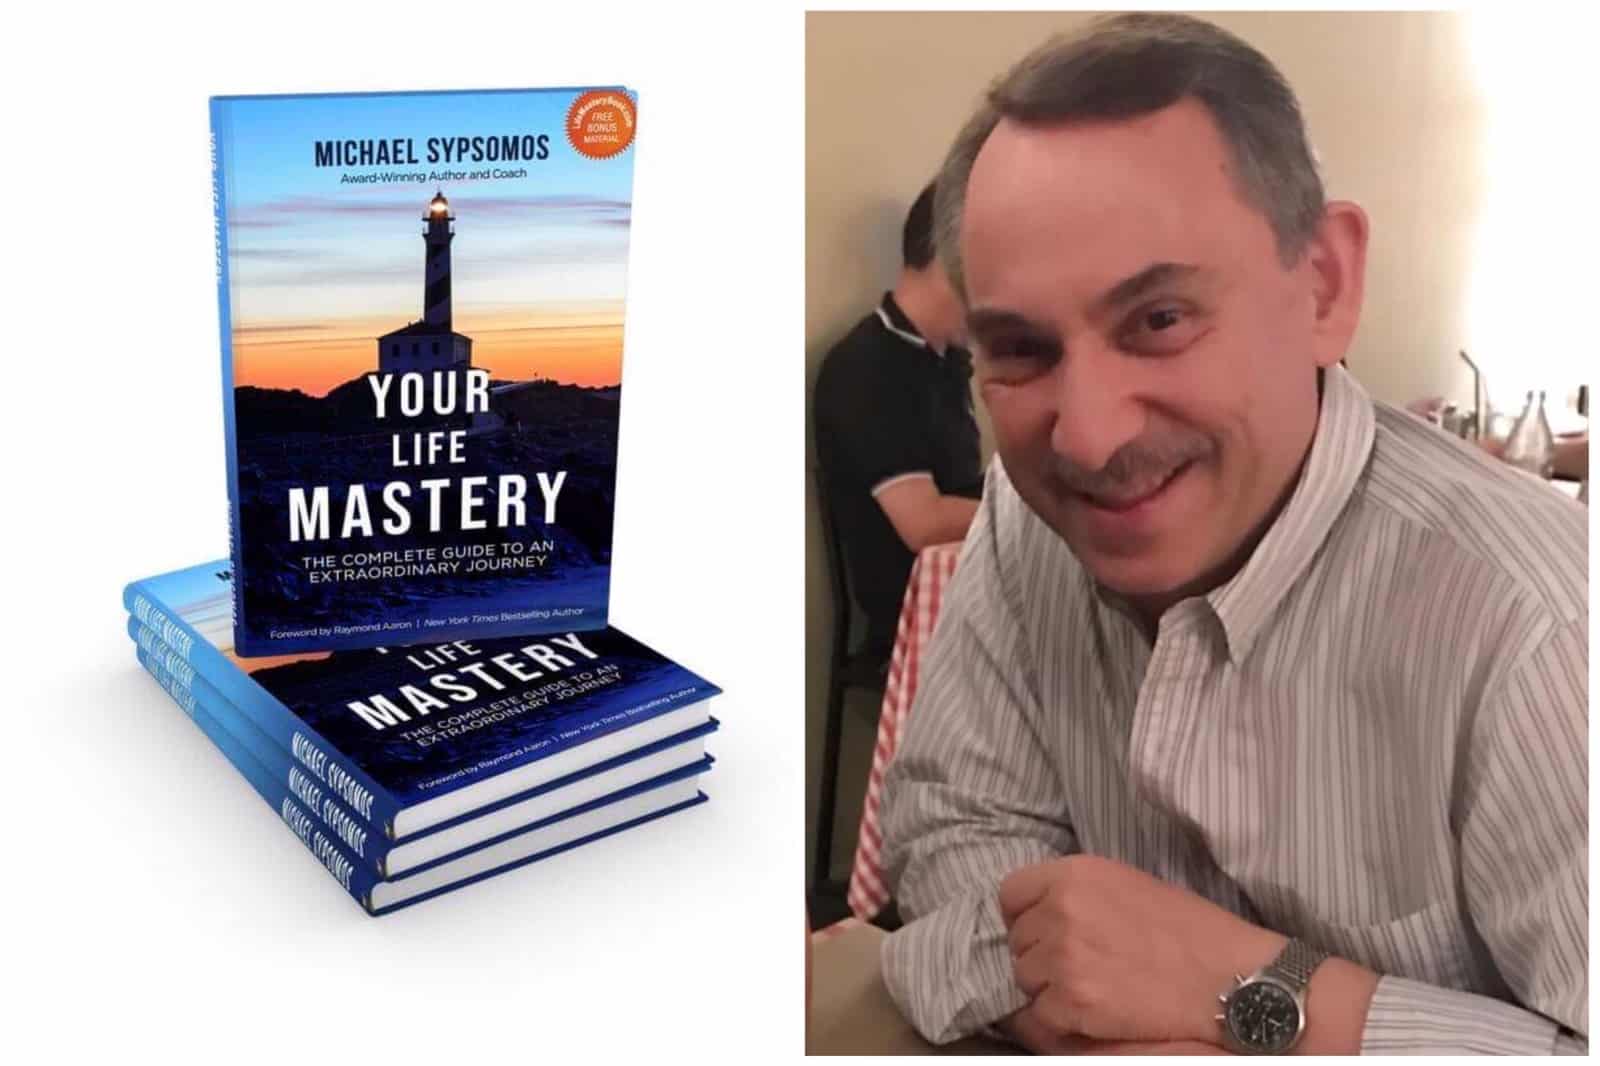 Η αριστοτεχνία της ζωής σας (Your Life Mastery): Το βιβλίο του Μιχαήλ Σύψωμου στην Amazon - Ο πλήρης οδηγός για ένα εξαιρετικό ταξίδι